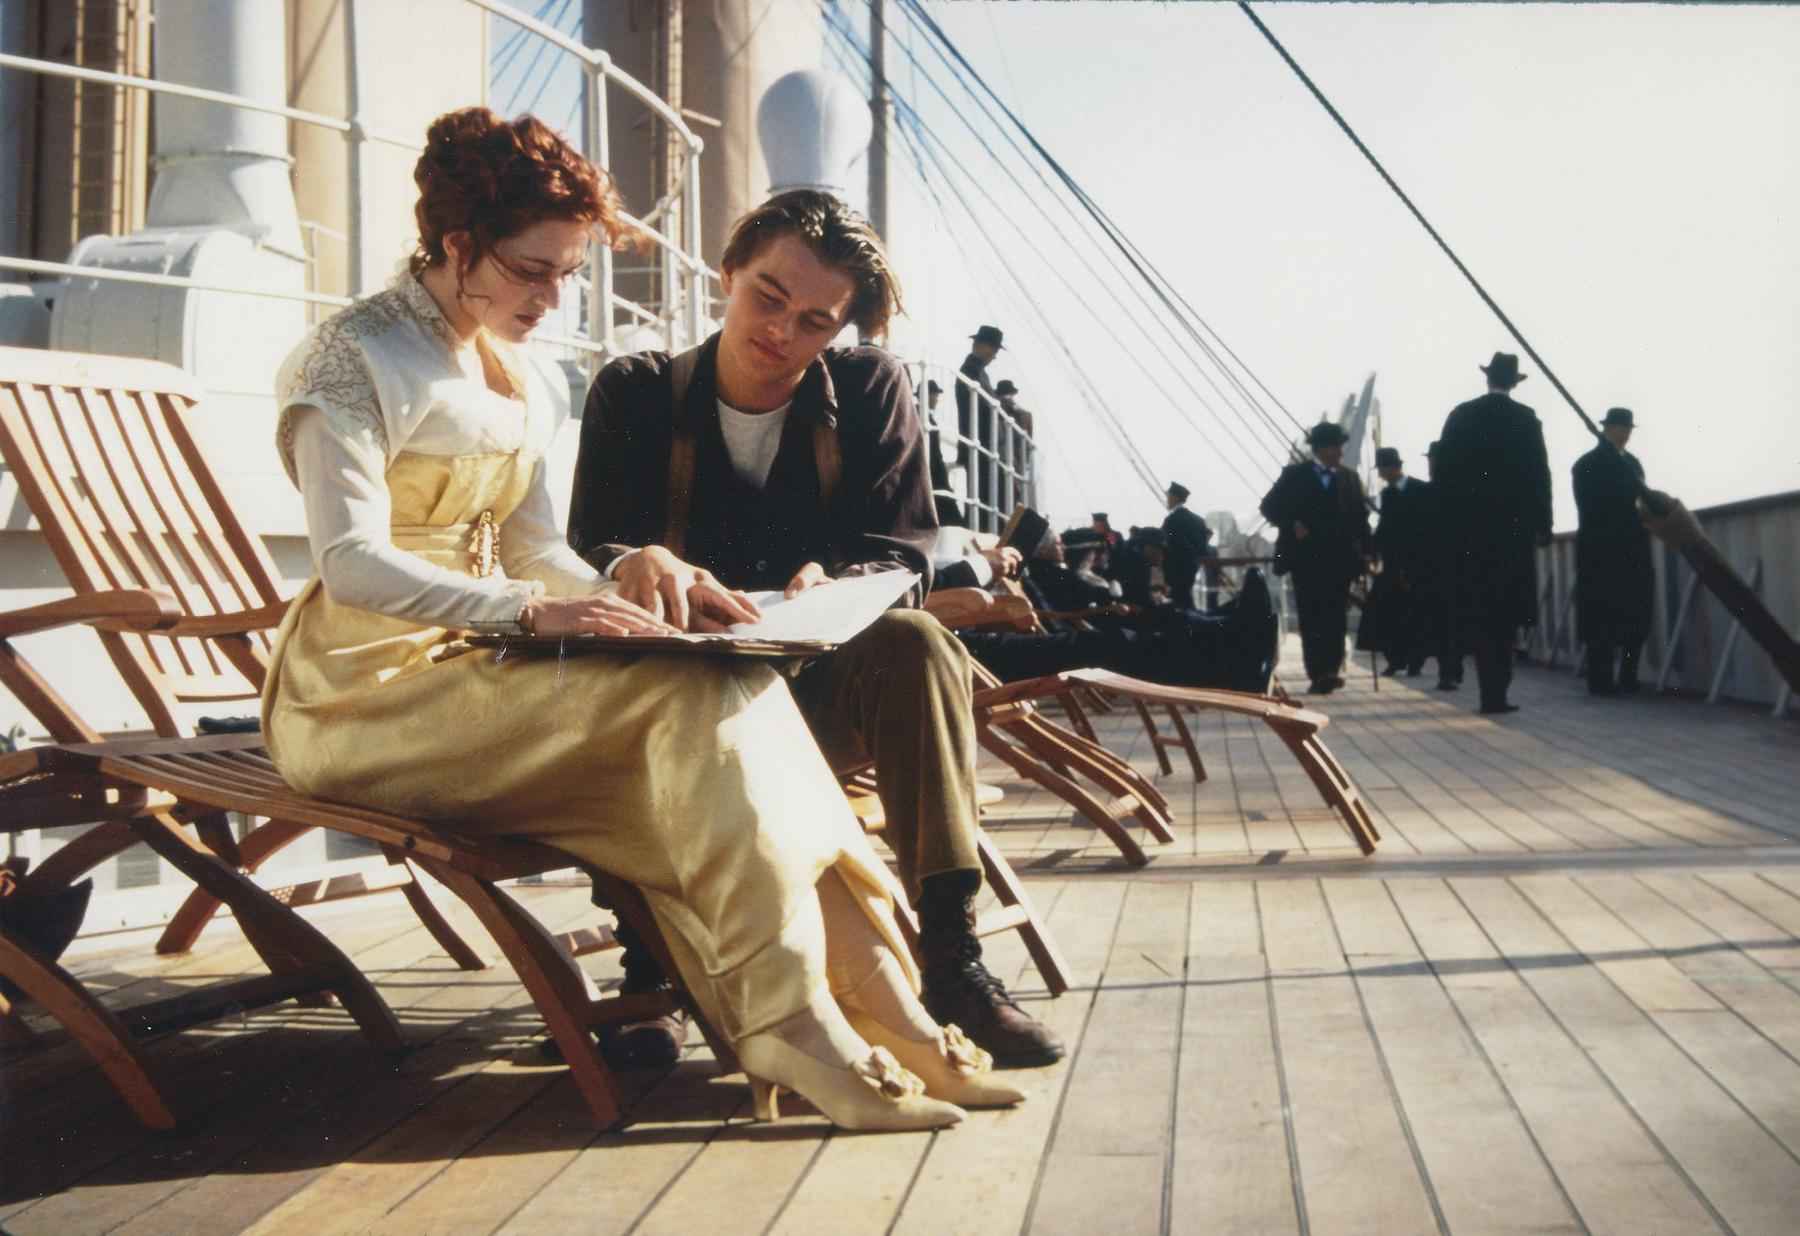 Titanic lidera visualizações no Star+ após desaparecimento de submarino - Reuters/20th Century Fox/Paramount/Handout 